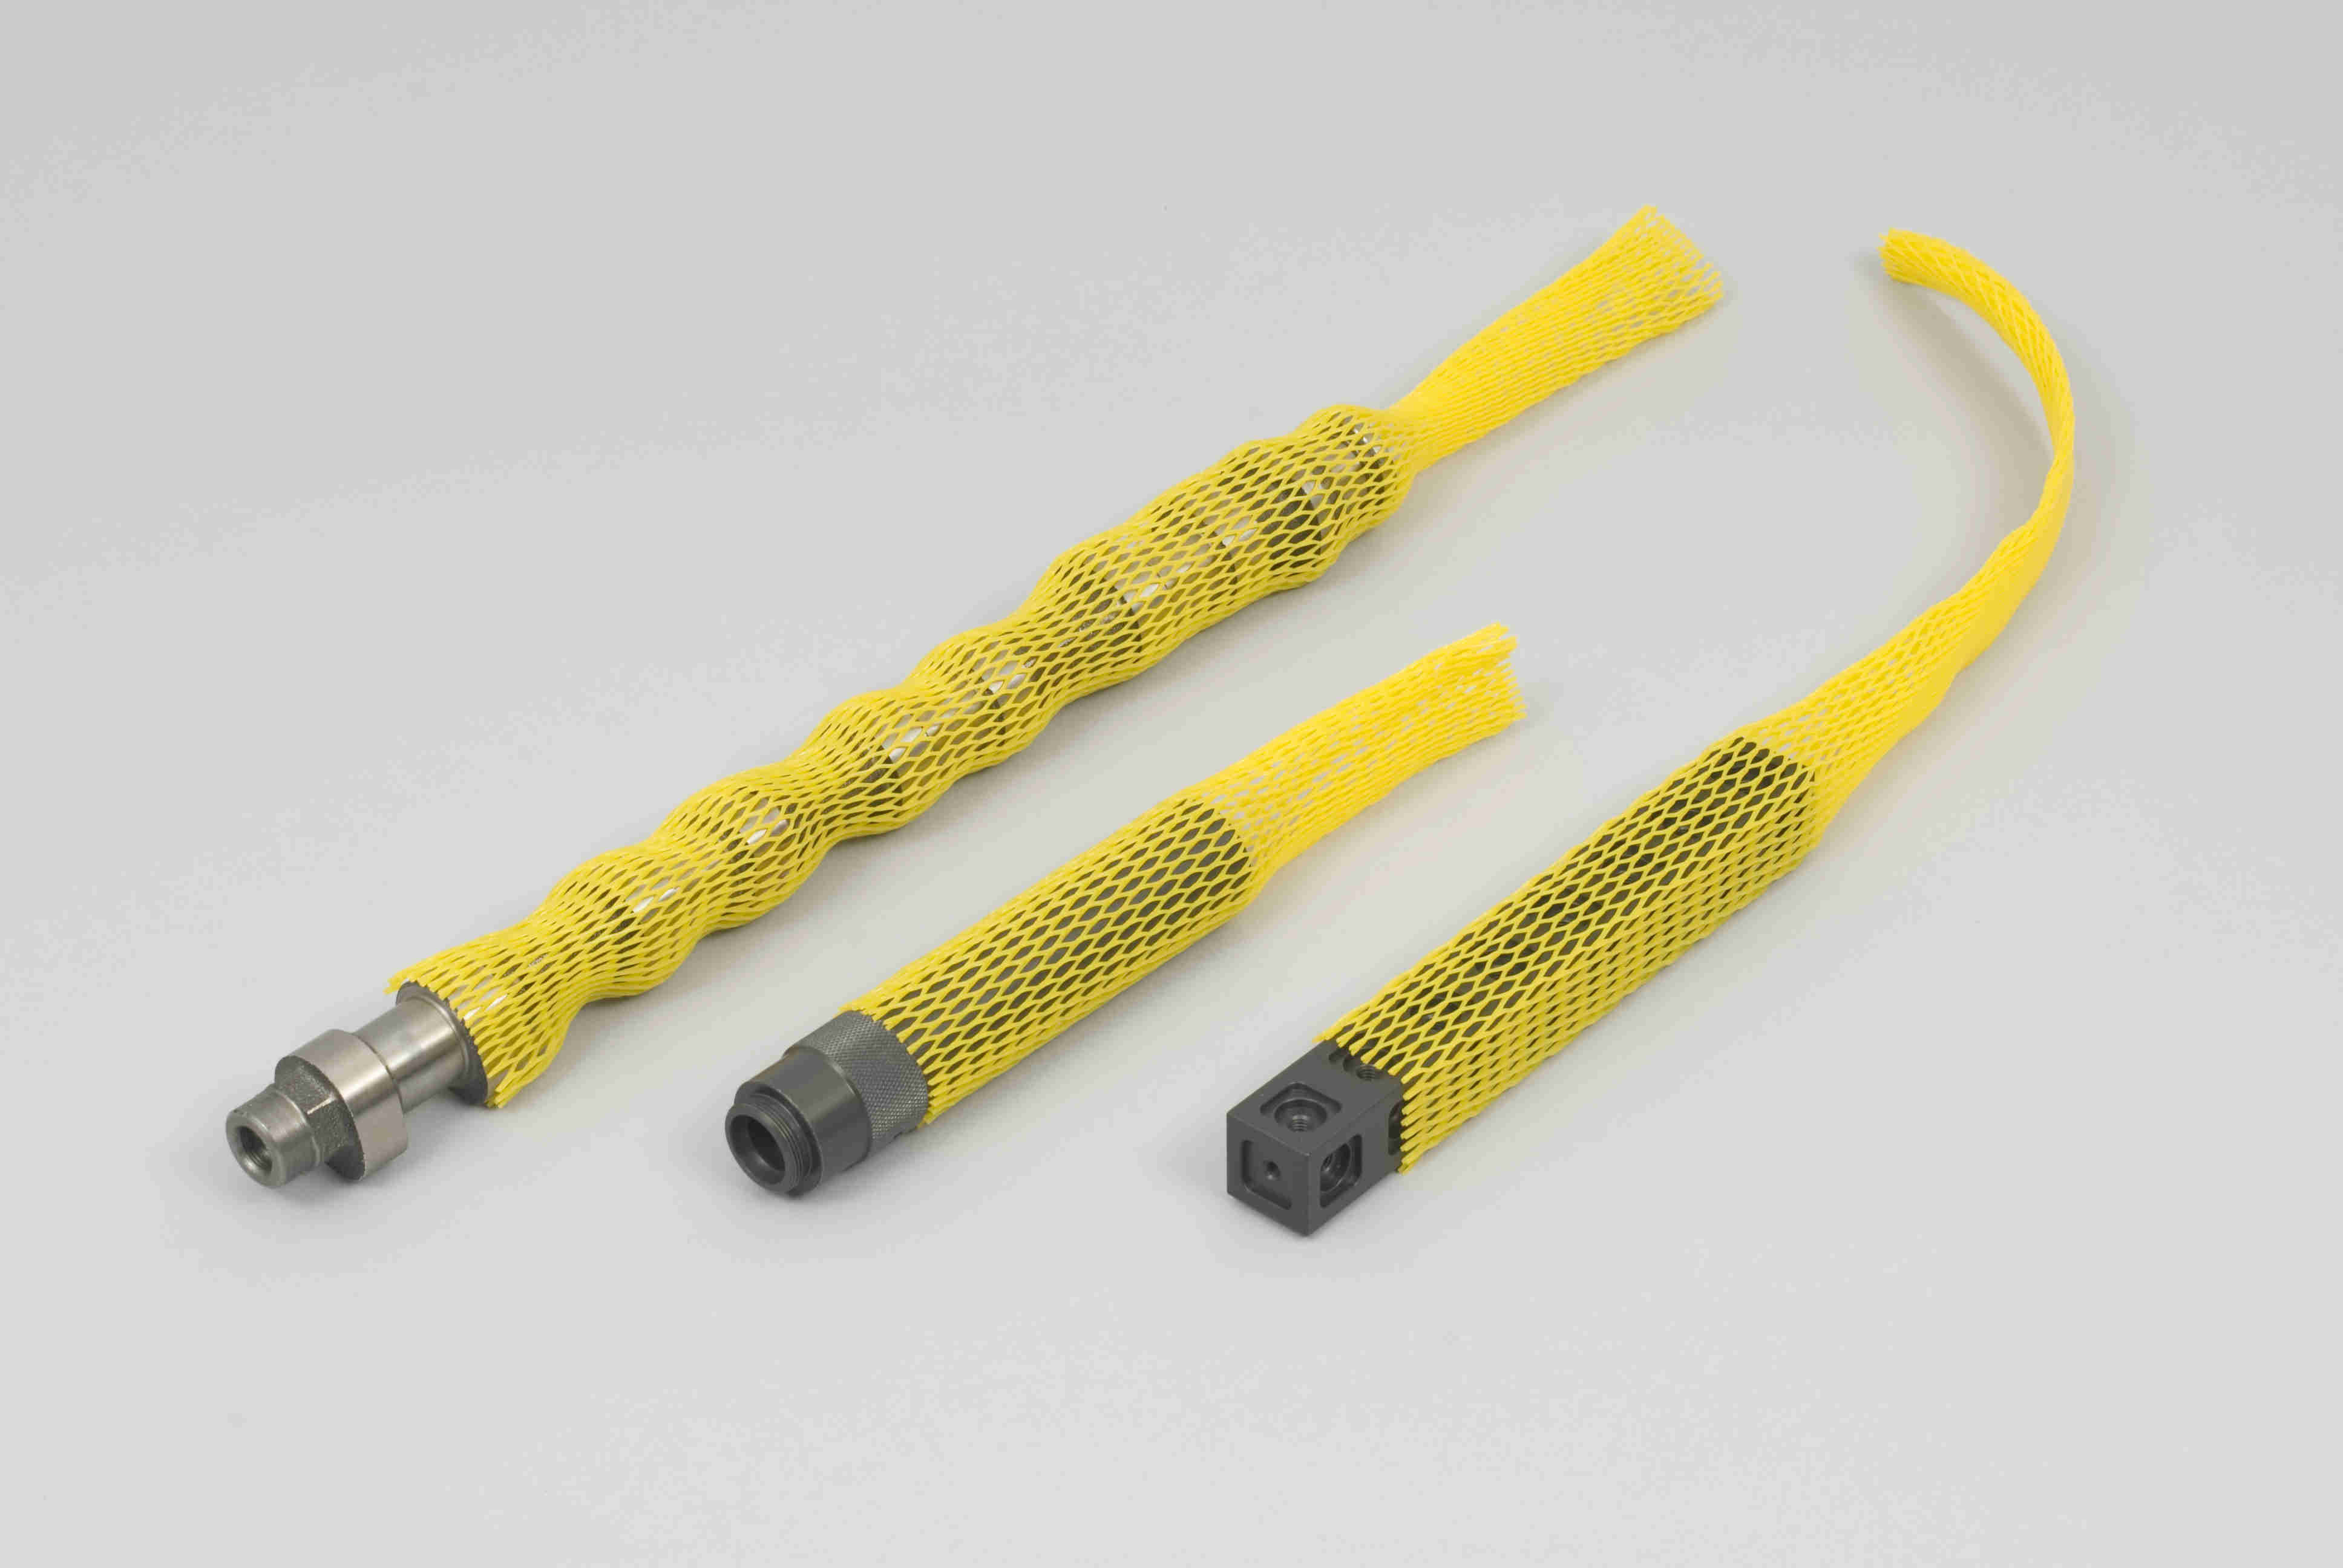 Kunststoff-Netzschutzschläuche in gelb mit Werkstücken, liegend